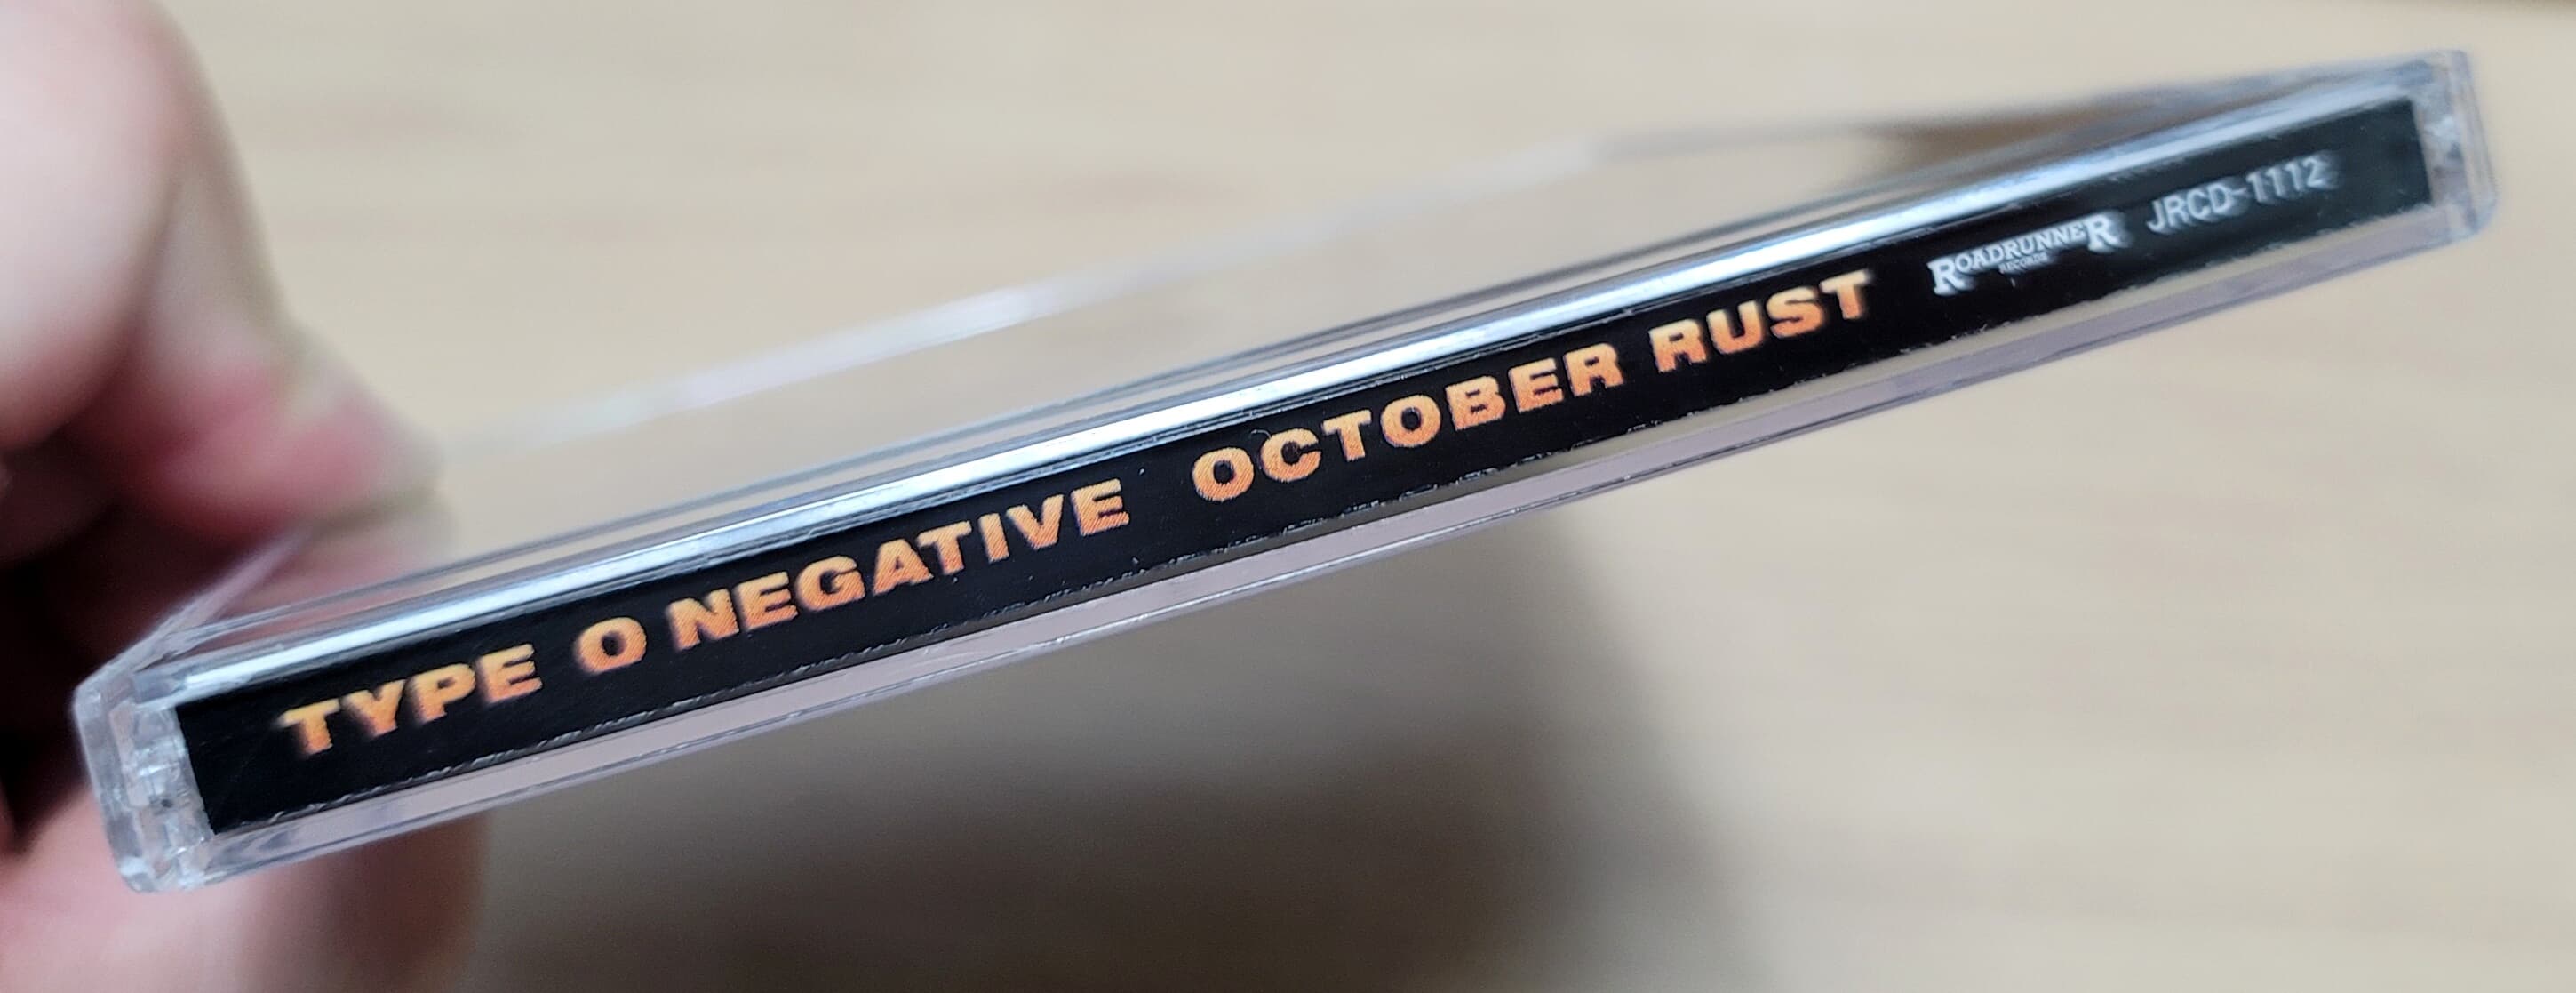 (지구레코드 초판) Type O Negative - October Rust